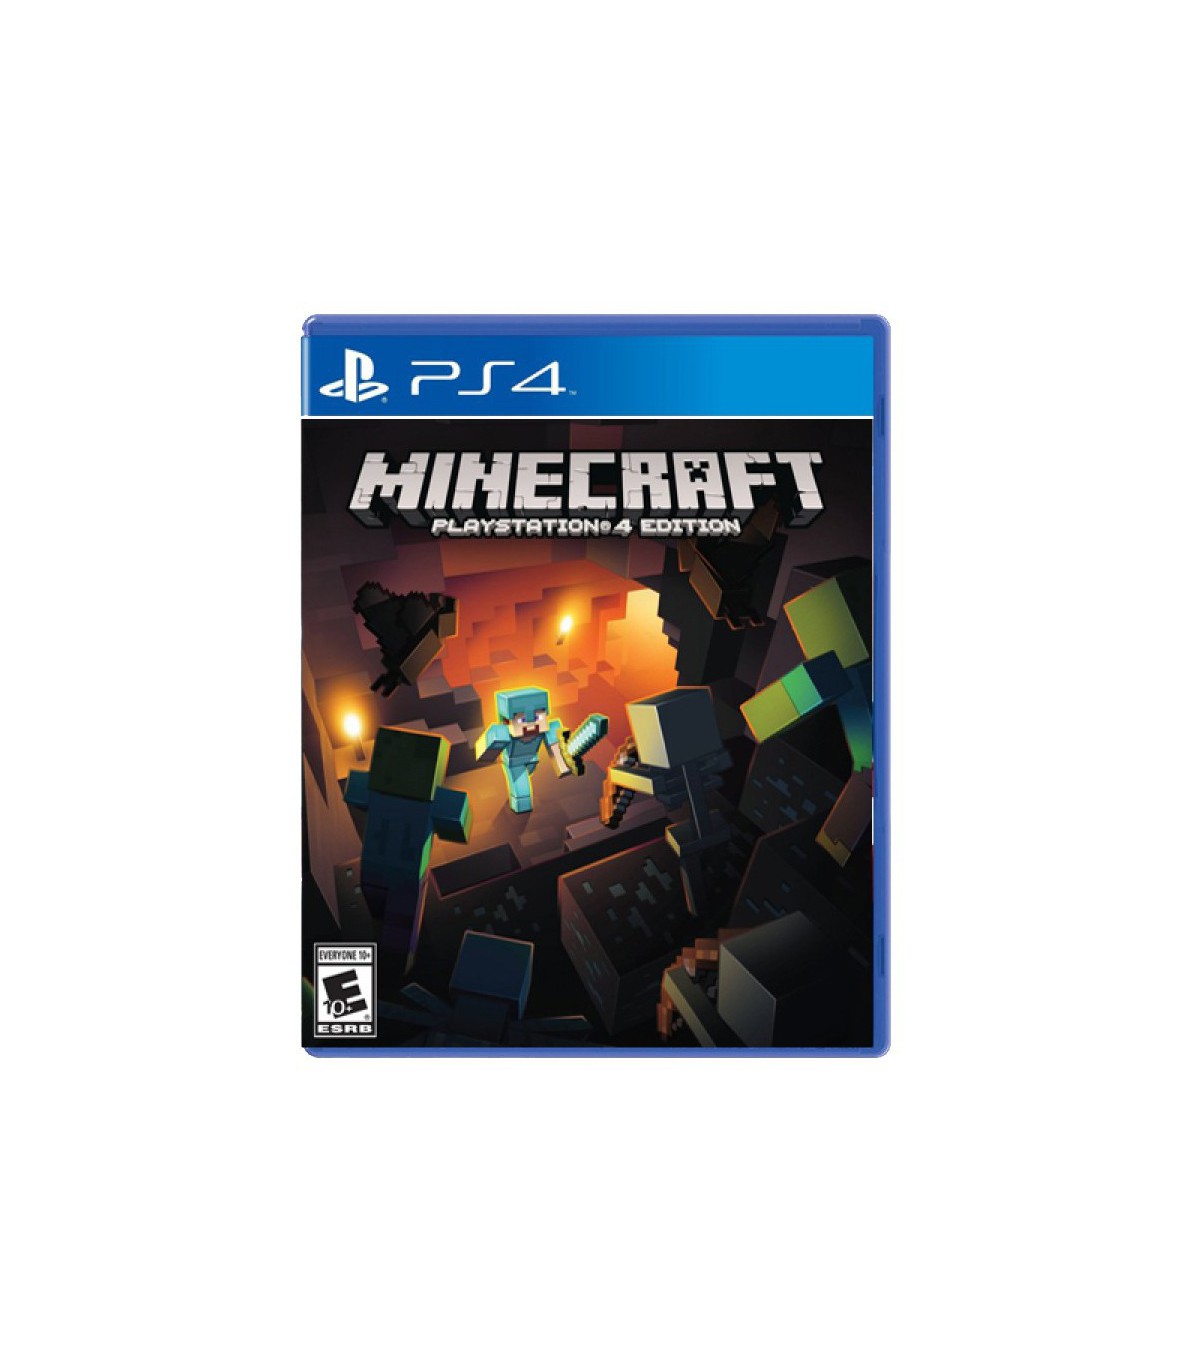 بازی Minecraft: PlayStation 4 Edition کارکرده - پلی استیشن 4